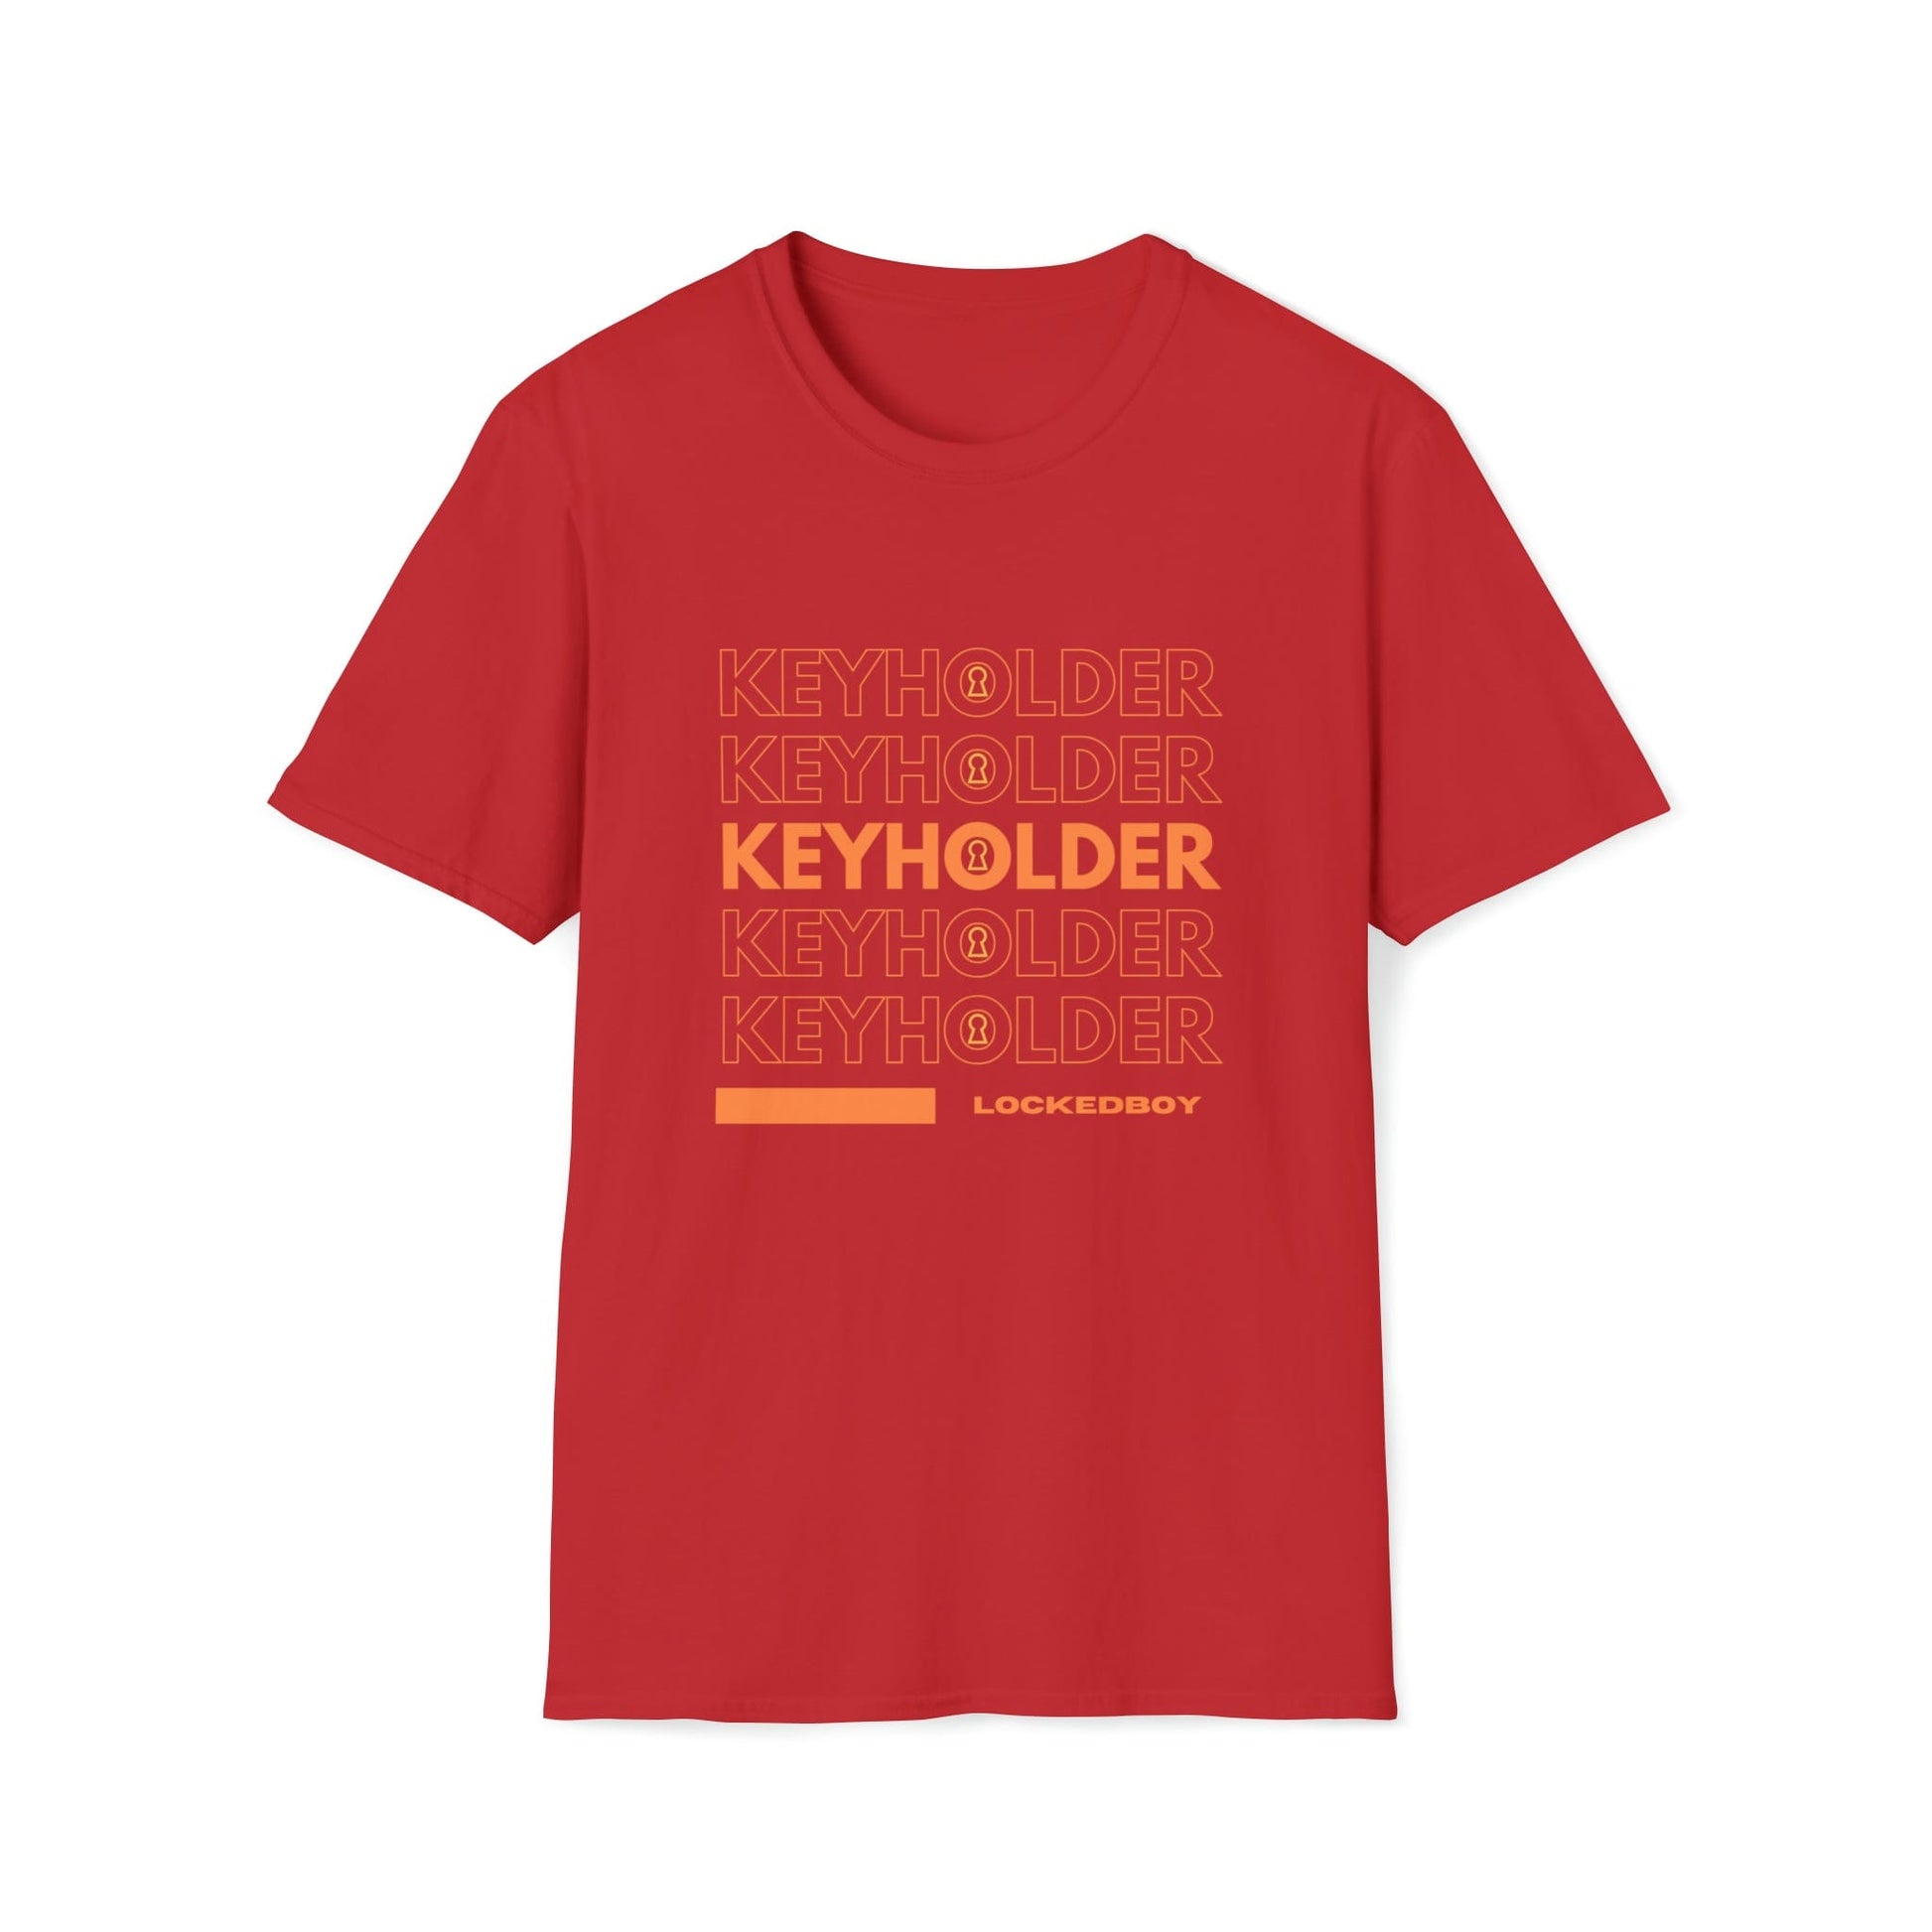 T-Shirt Red / S KEYHOLDER bag Inspo - Chastity Shirts by LockedBoy Athletic LEATHERDADDY BATOR